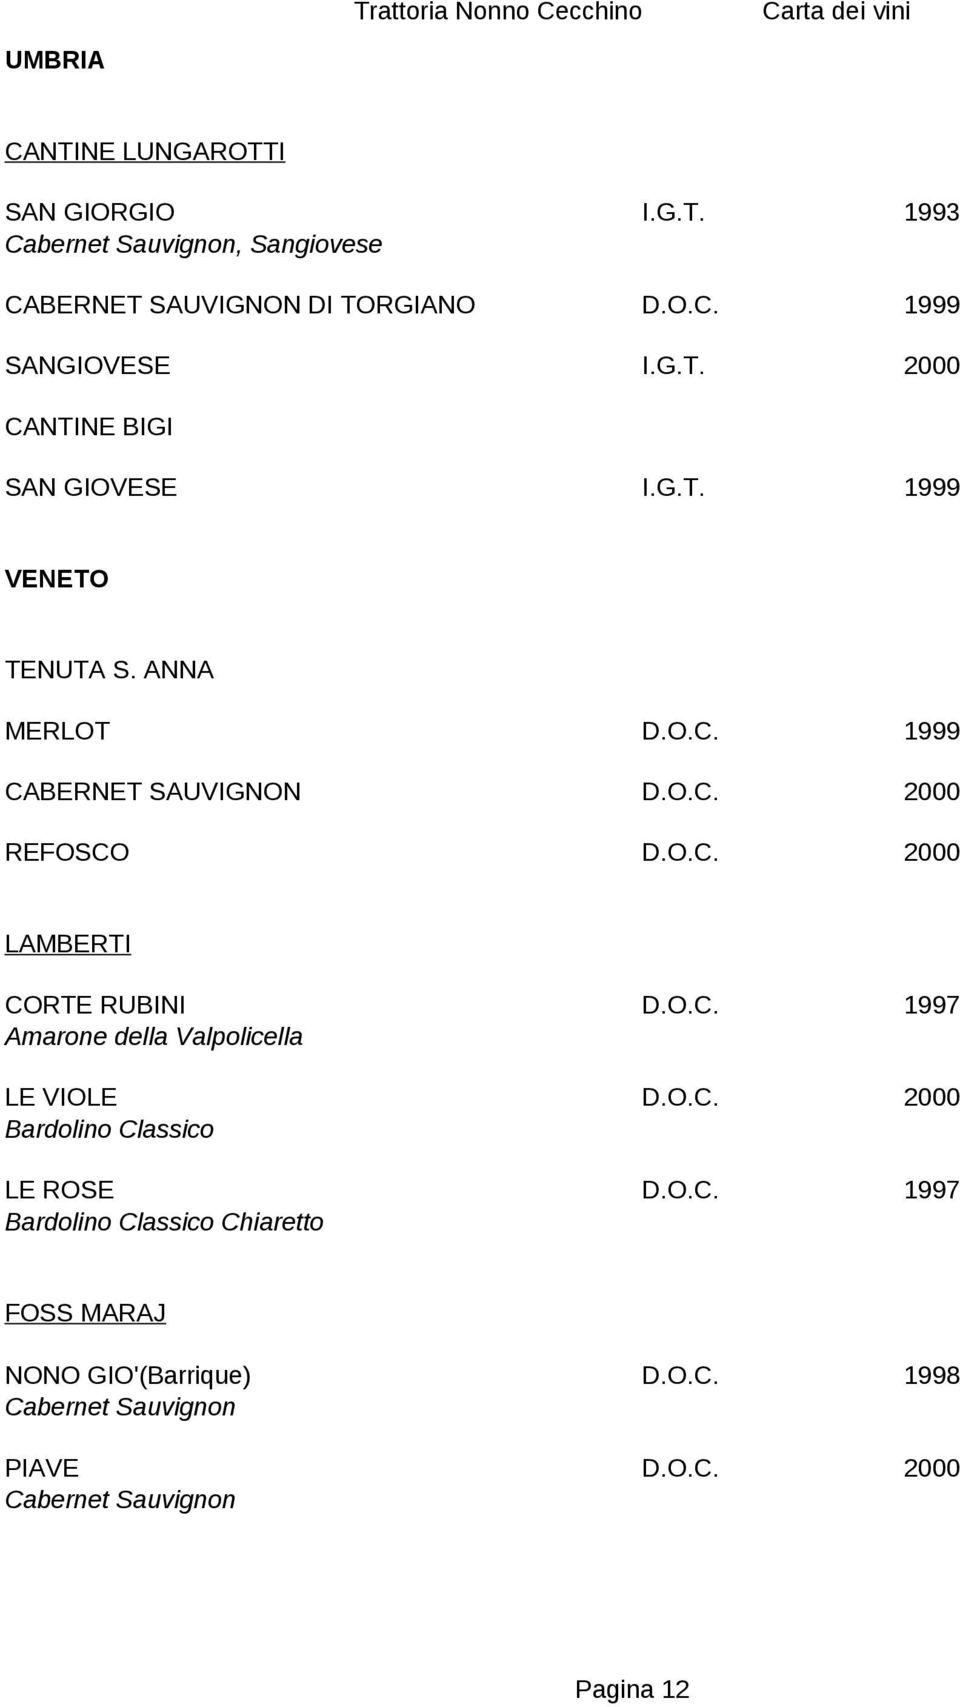 O.C. 1997 Amarone della Valpolicella LE VIOLE D.O.C. 2000 Bardolino Classico LE ROSE D.O.C. 1997 Bardolino Classico Chiaretto FOSS MARAJ NONO GIO'(Barrique) Cabernet Sauvignon D.